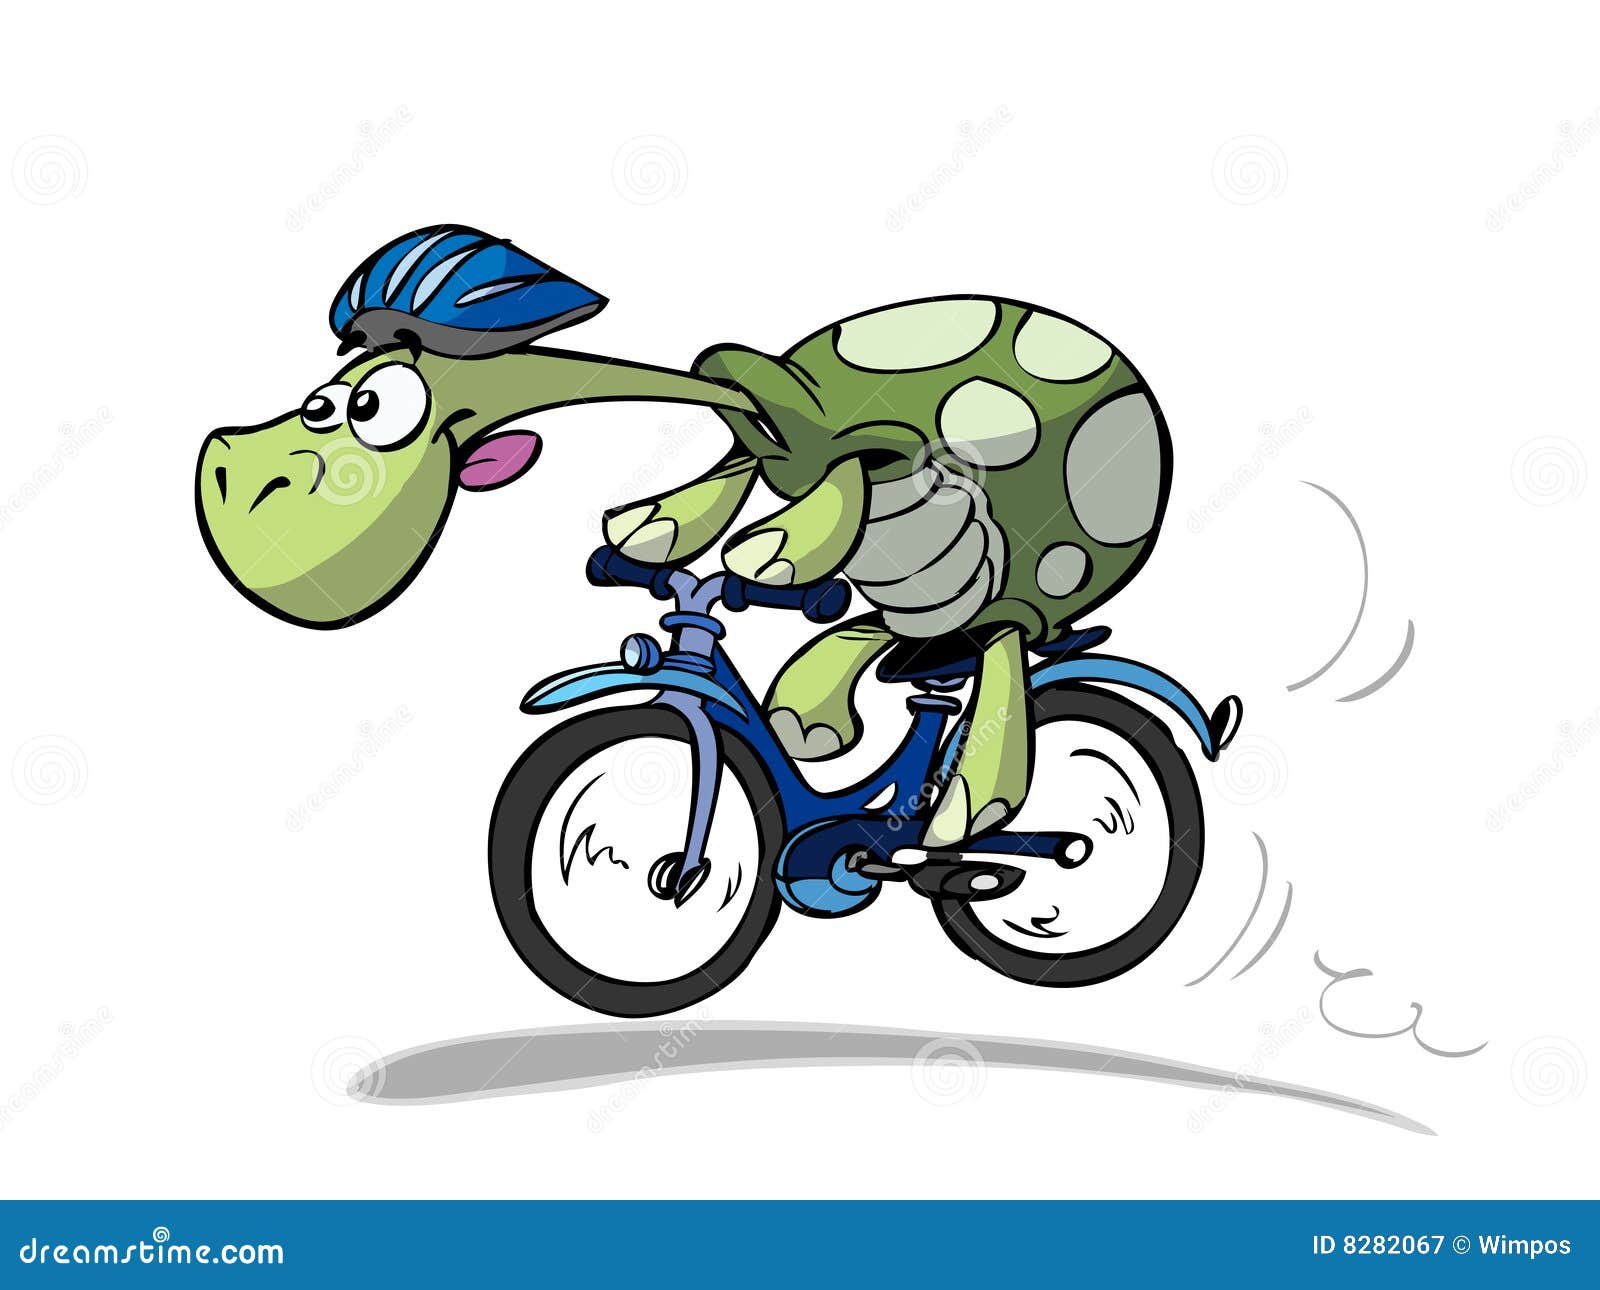 bike turtle